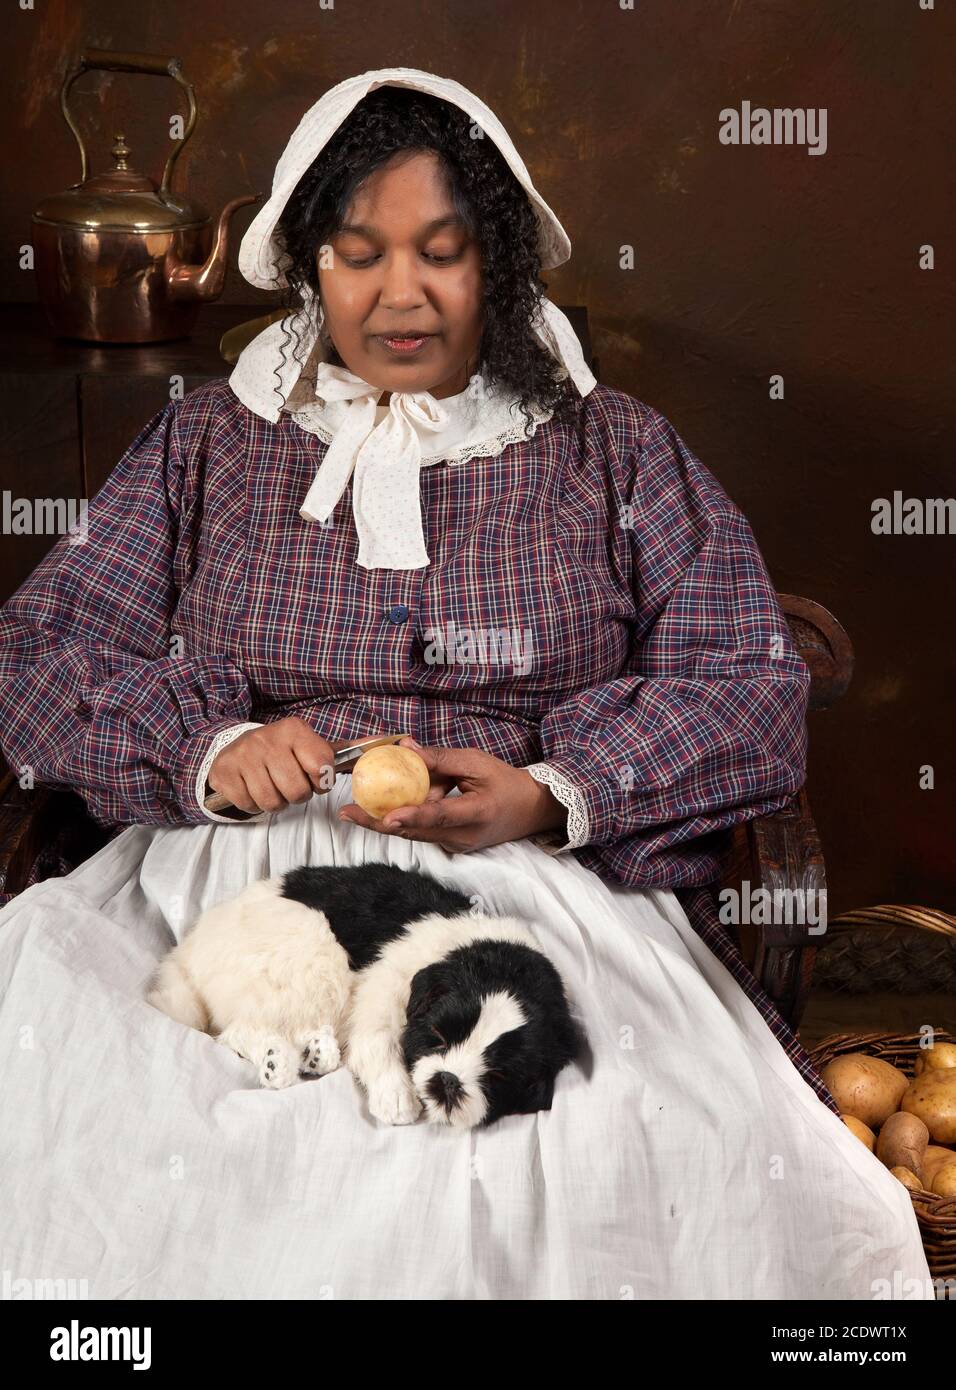 Rievocazione storica scena di un nero cameriera vittoriano sbucciare le patate in una antica cucina Foto Stock